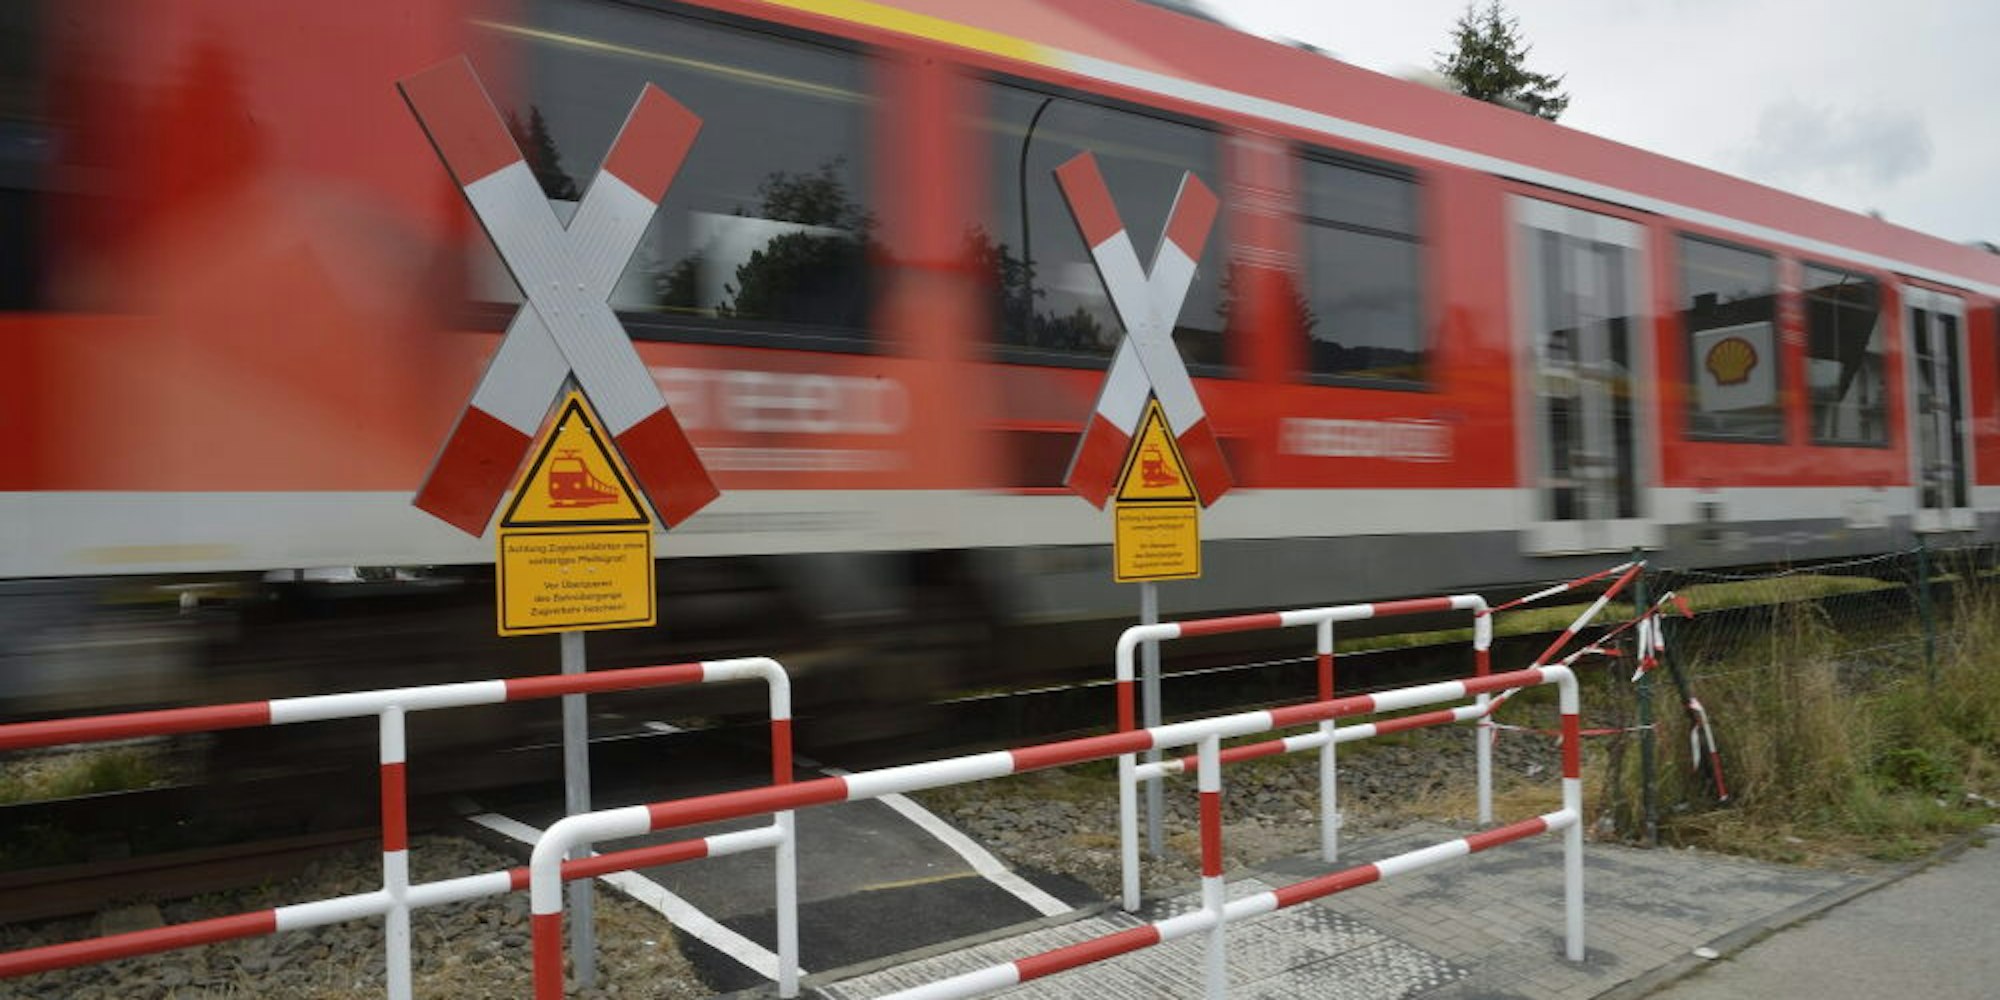 Auf gelben Schildern wird gewarnt: „Achtung Zugdurchfahrten ohne vorheriges Pfeifsignal!“